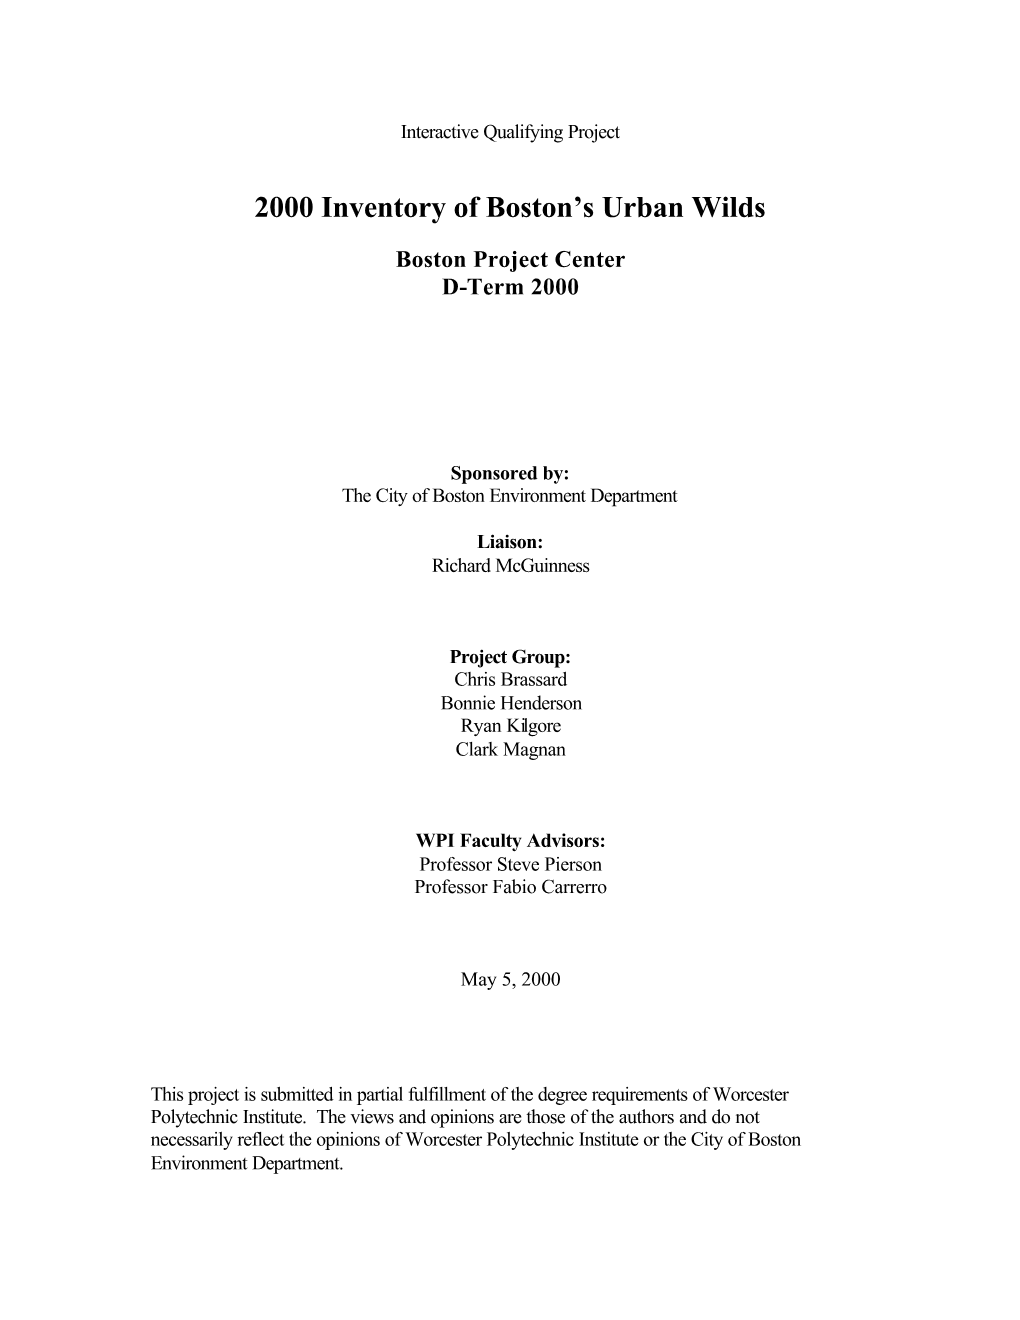 Urban Wilds Final Report